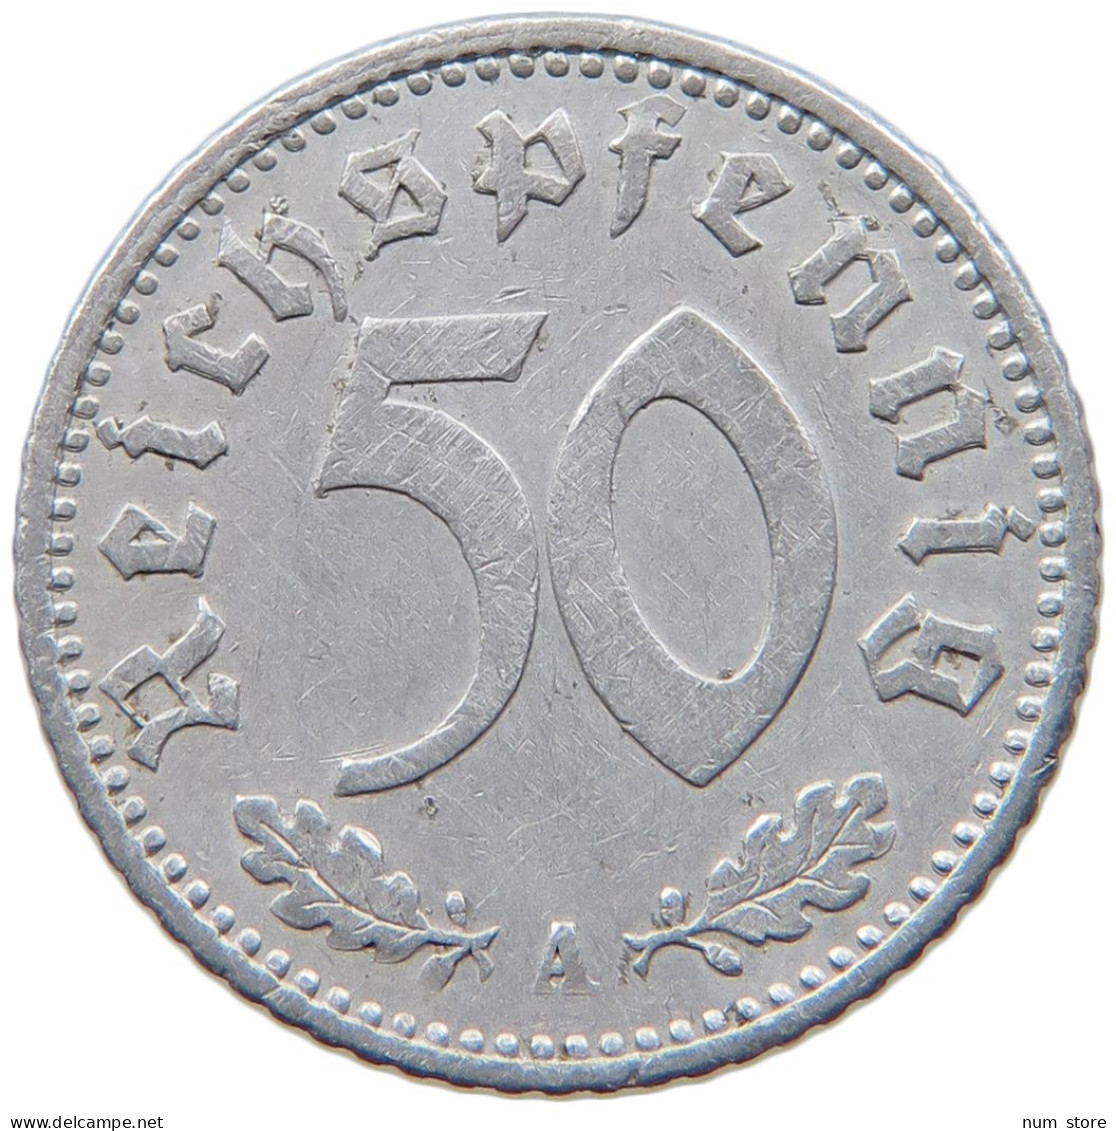 GERMANY 50 REICHSPFENNIG 1935 A #s095 0213 - 50 Reichspfennig